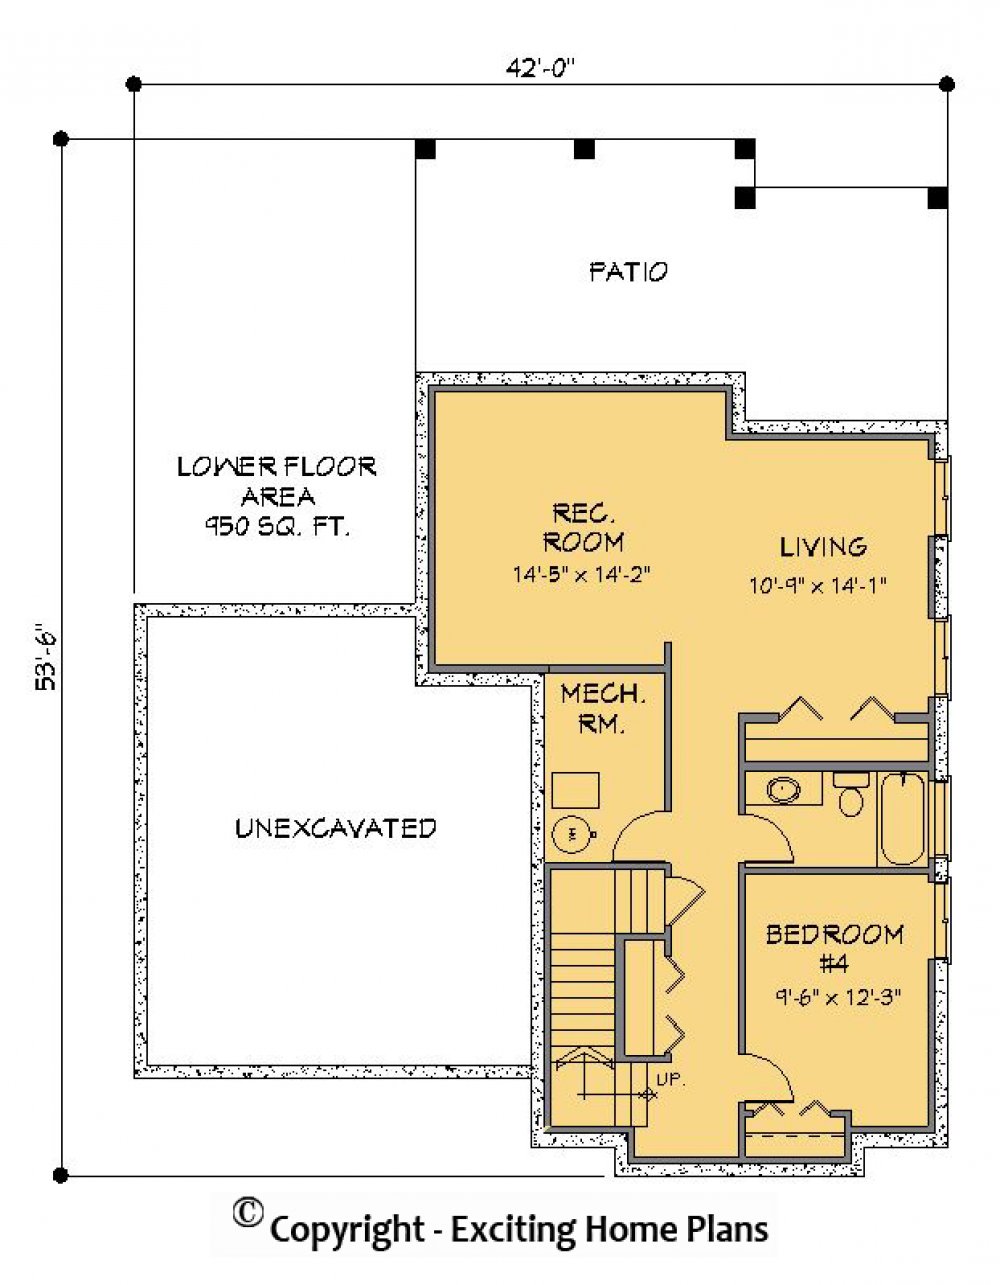 House Plan E1204-10 Lower Floor Plan